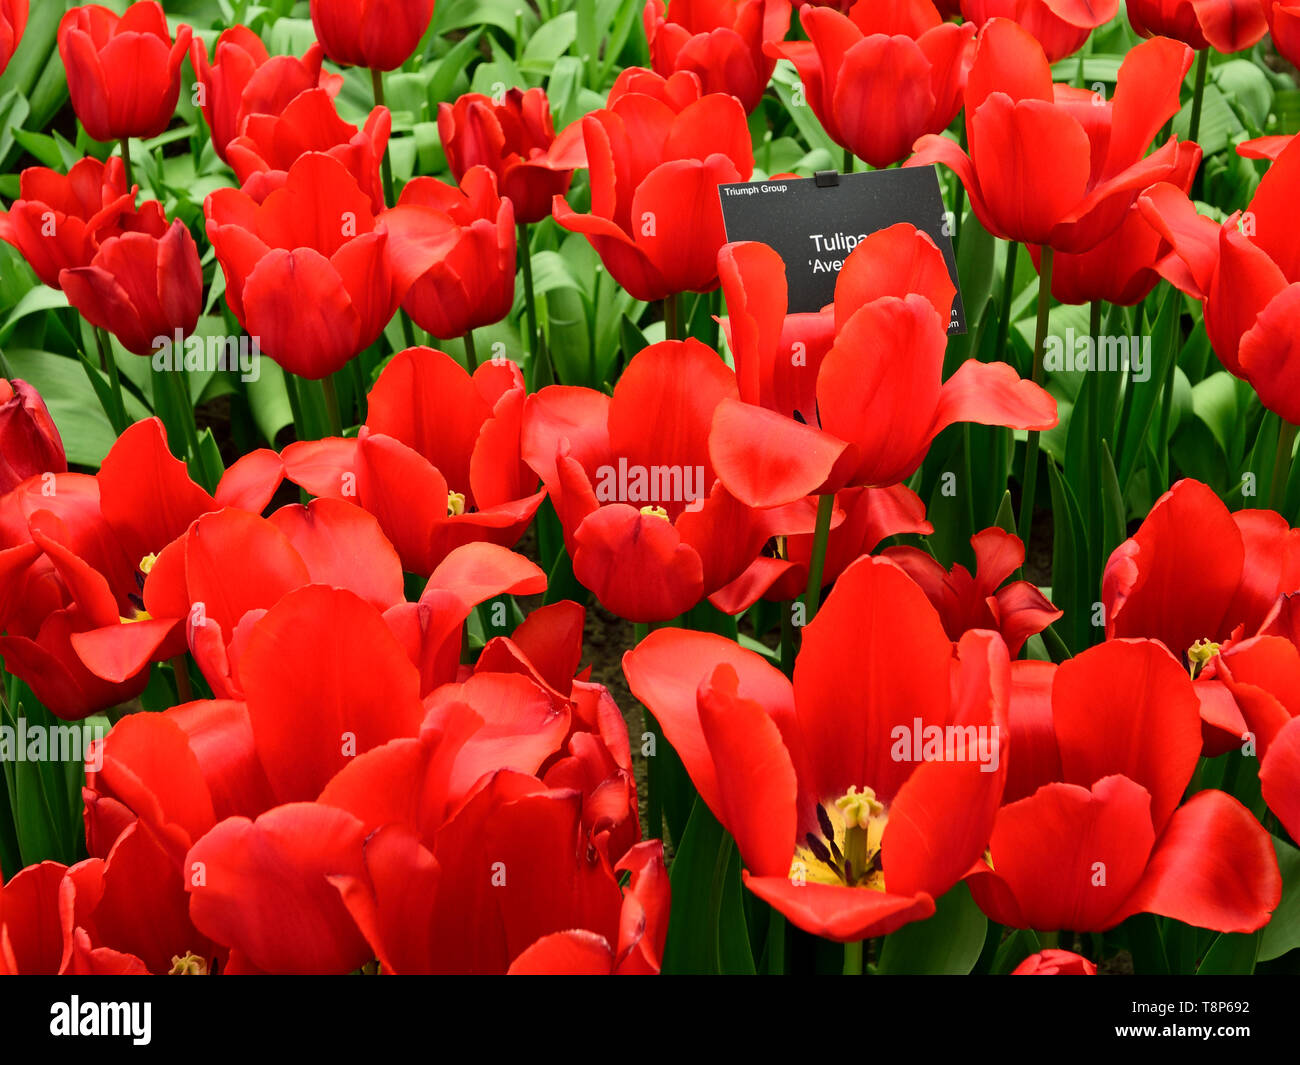 Photographié dans le parc de Keukenhof show tulip avril 2019, densément planté tulip prend une couleur rouge vif Banque D'Images